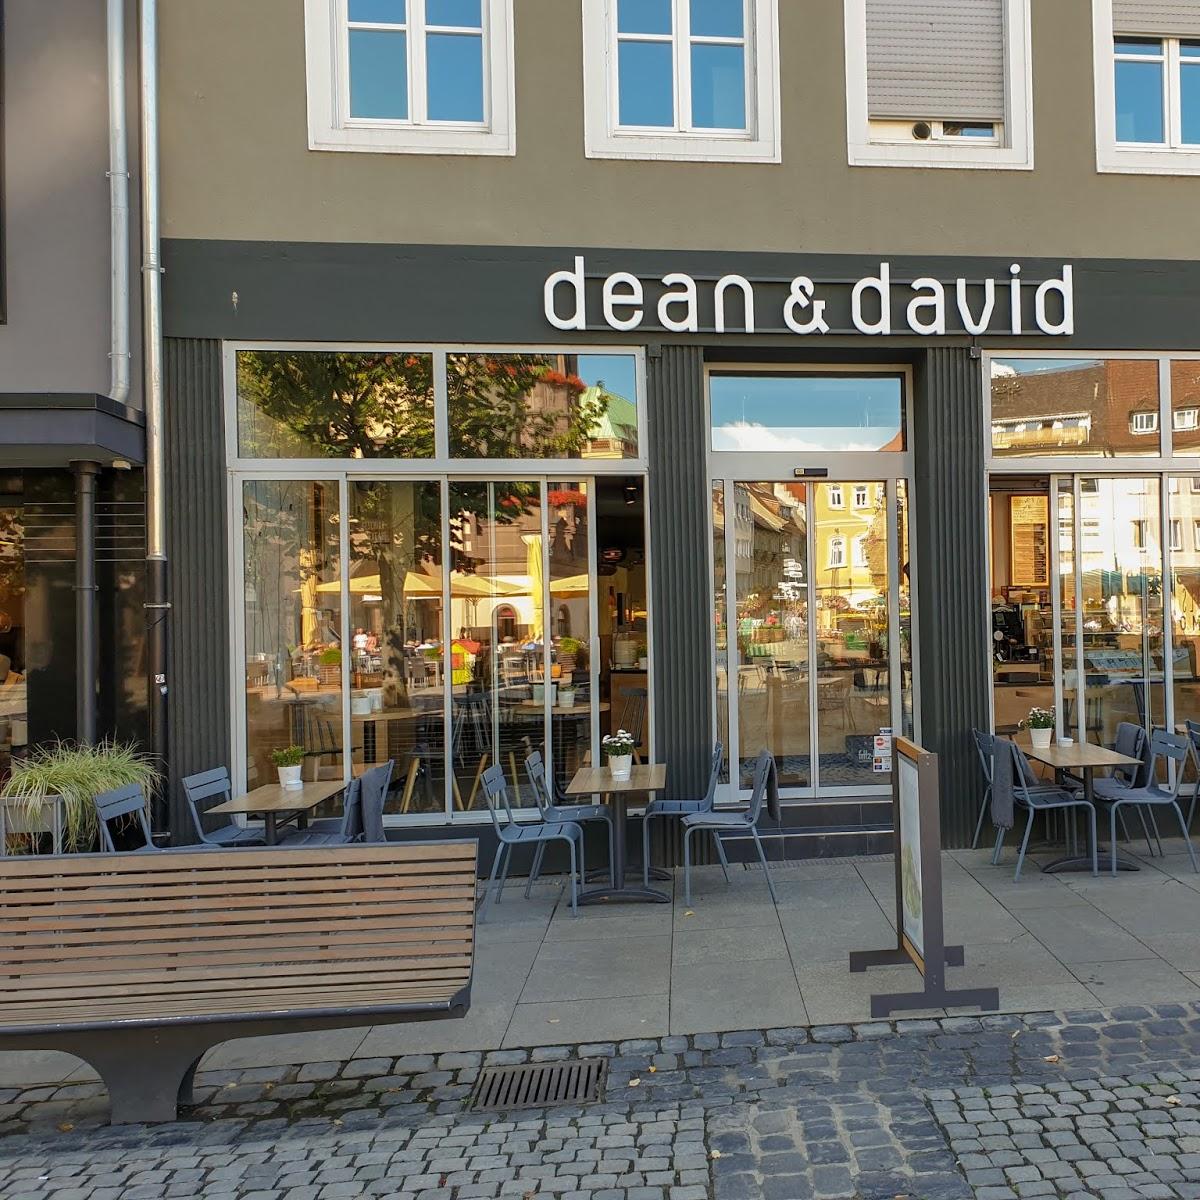 Restaurant "dean&david" in Schweinfurt